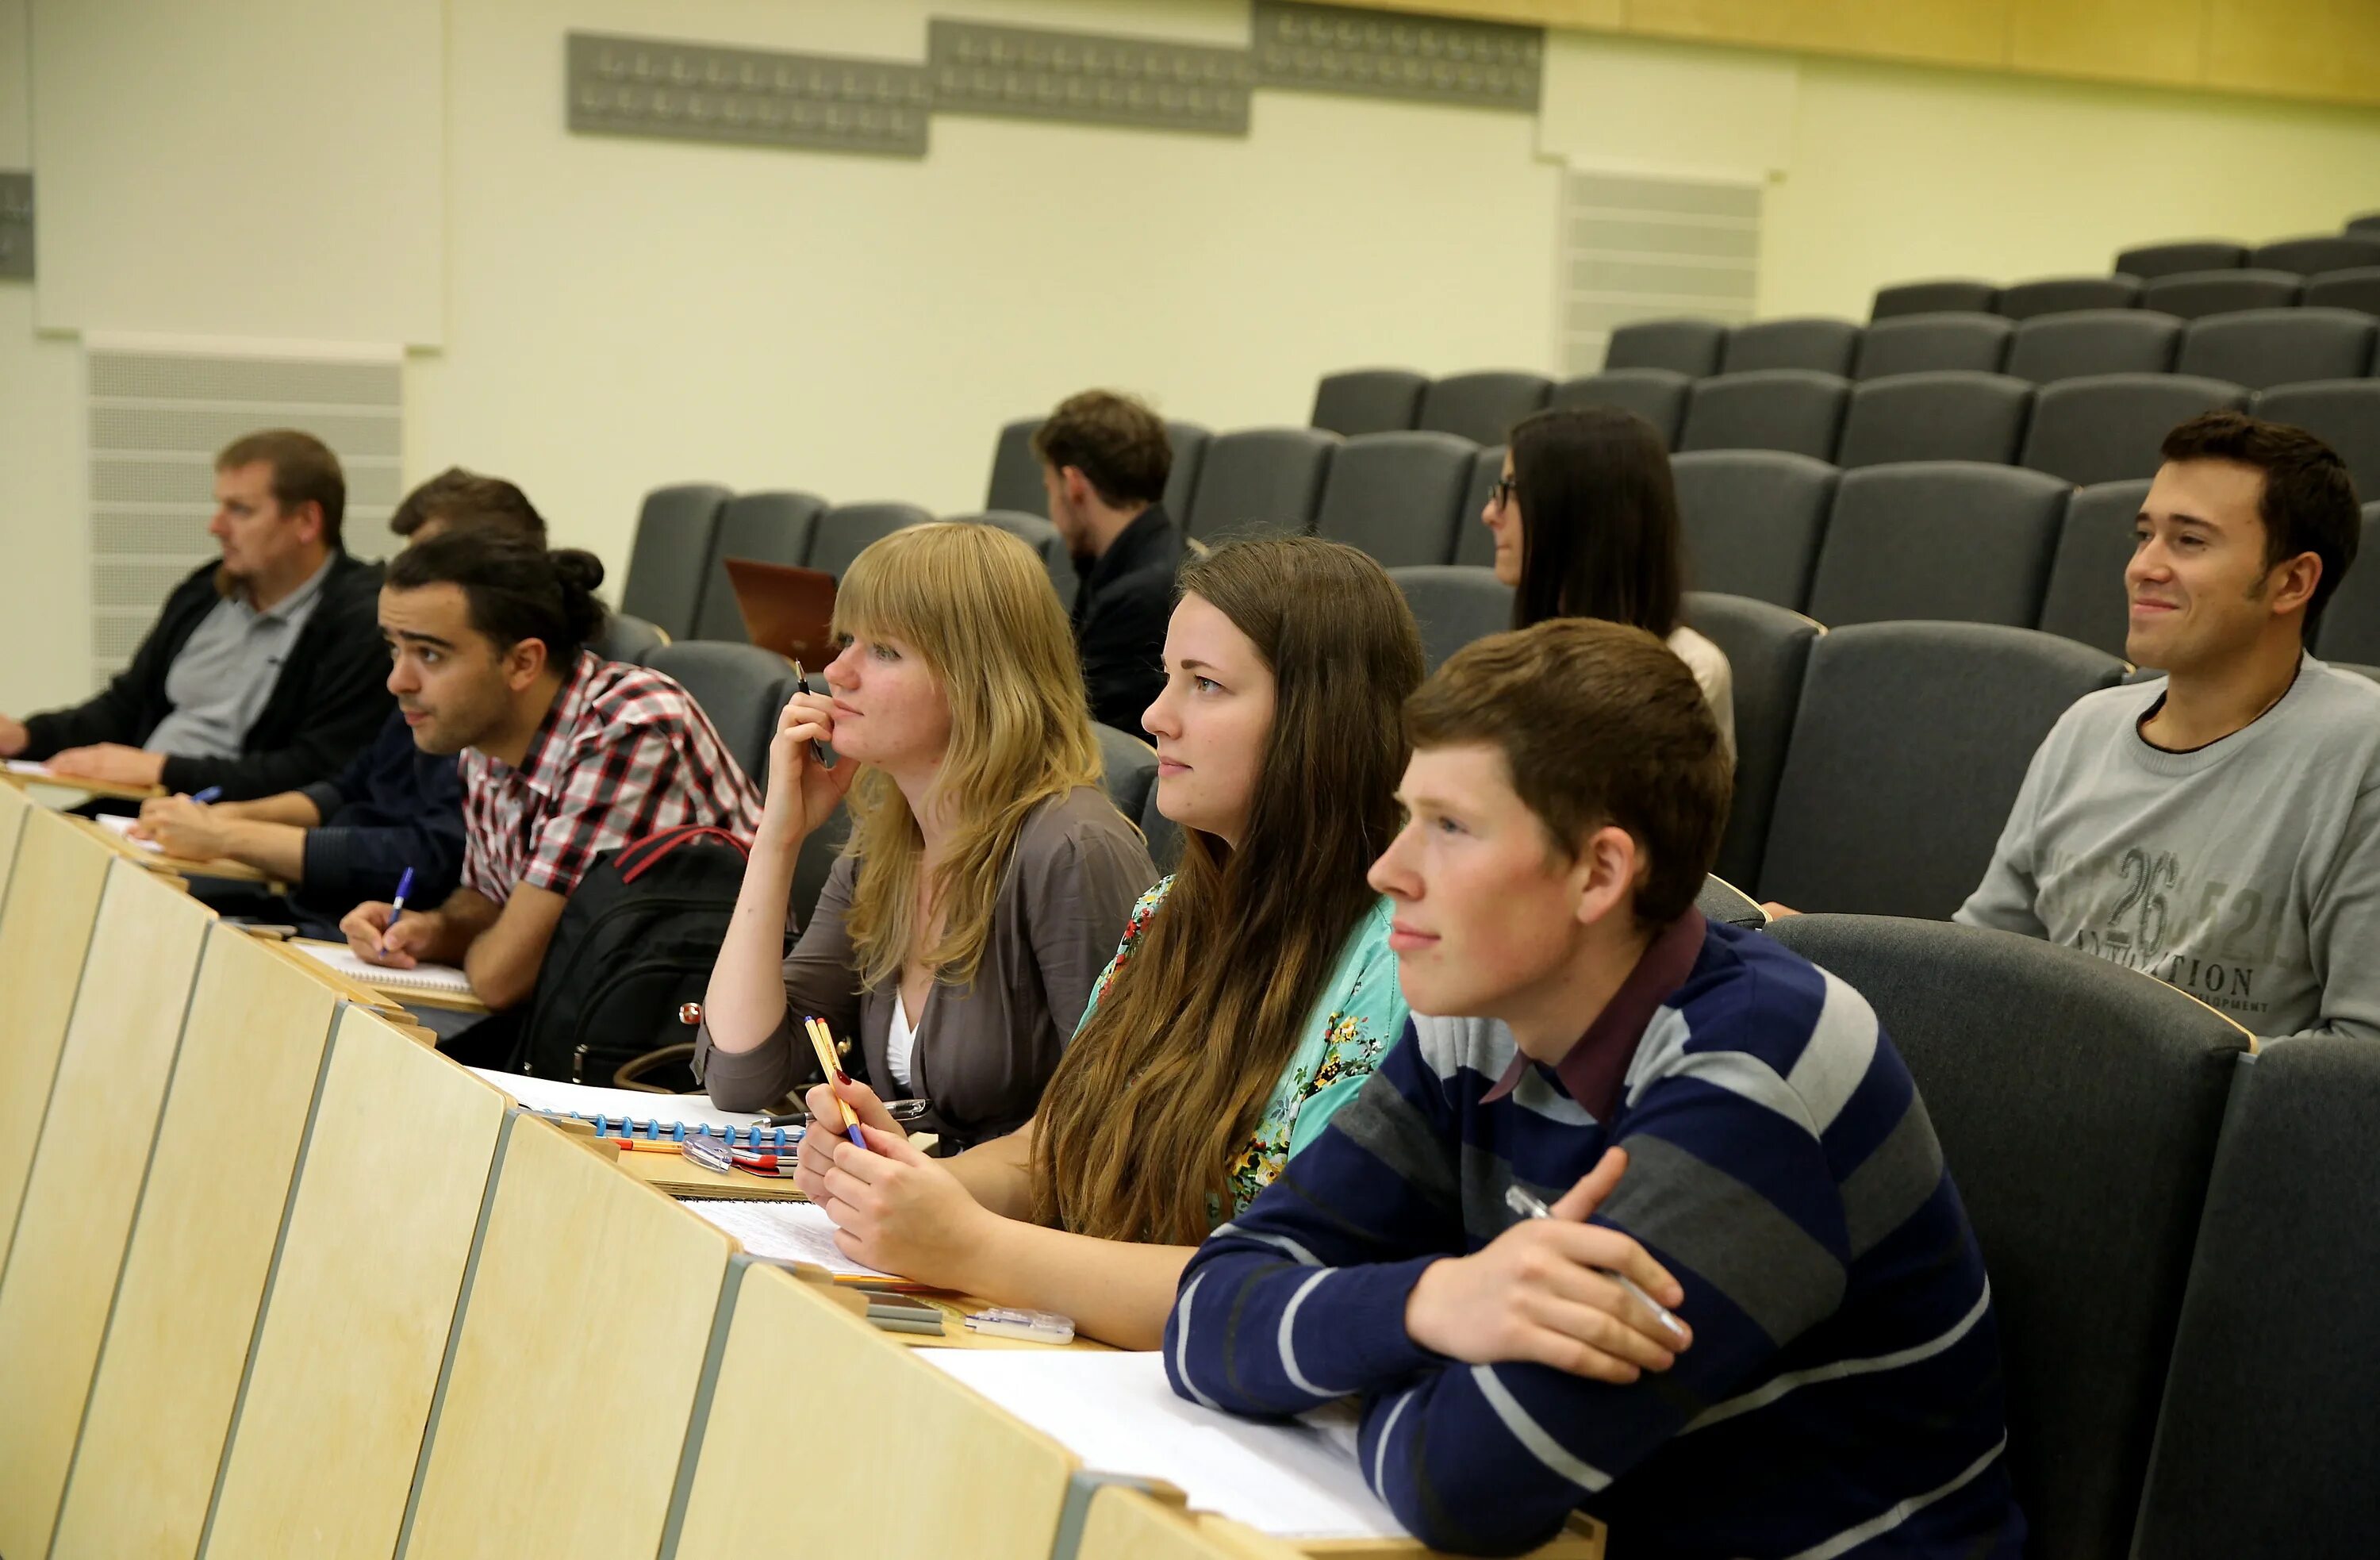 Сколько студентов в институте. Студенты в аудитории. Аудитория в университете со студентами. Вузы Латвии. Университет Латвия студенты.